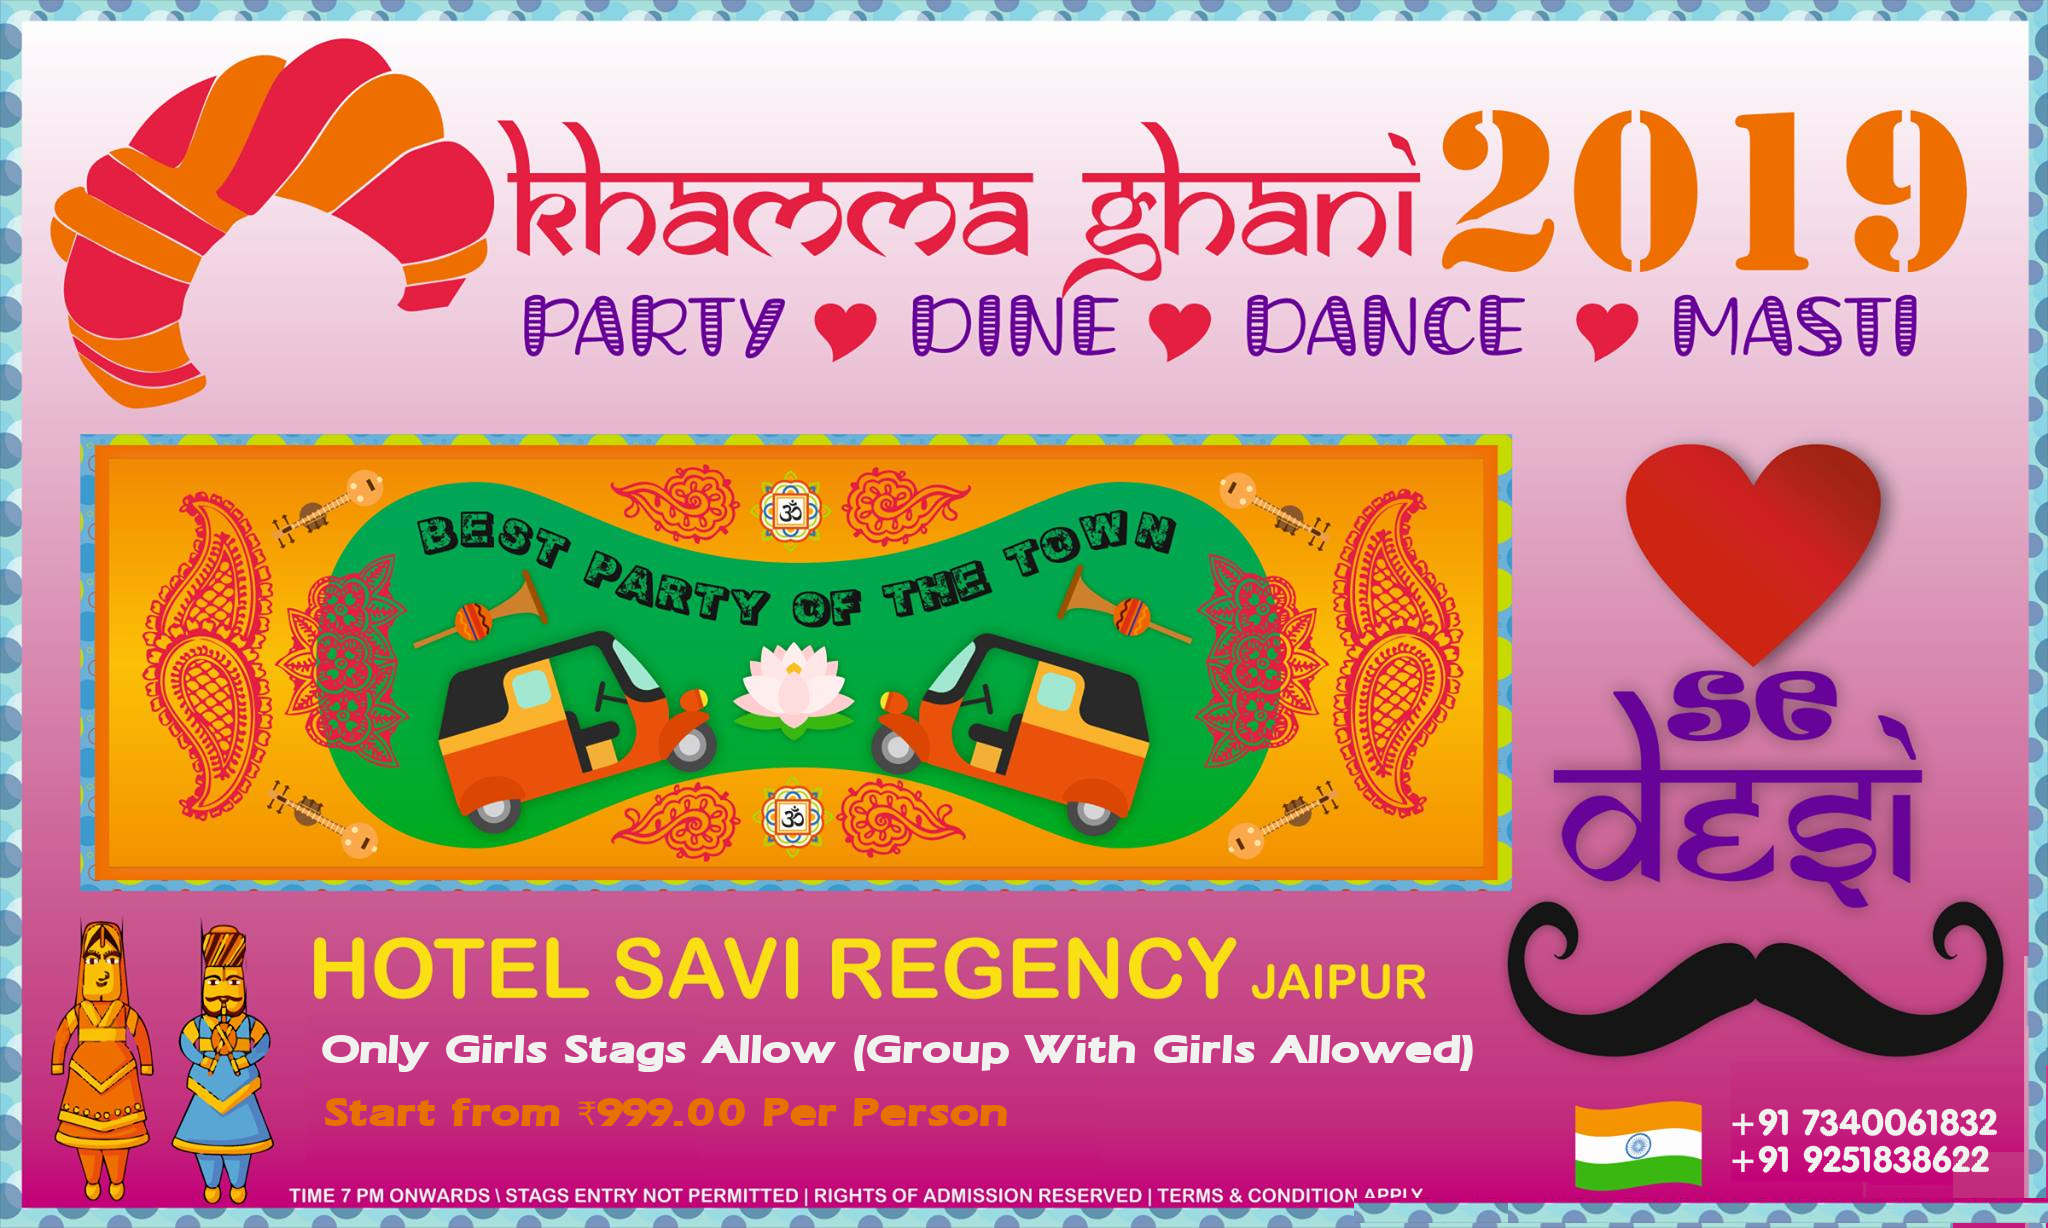 Khamma Ghani - Dil Se Desi New Year 2019 Party At Hotel Savi Regency Jaipur, Jaipur, Rajasthan, India